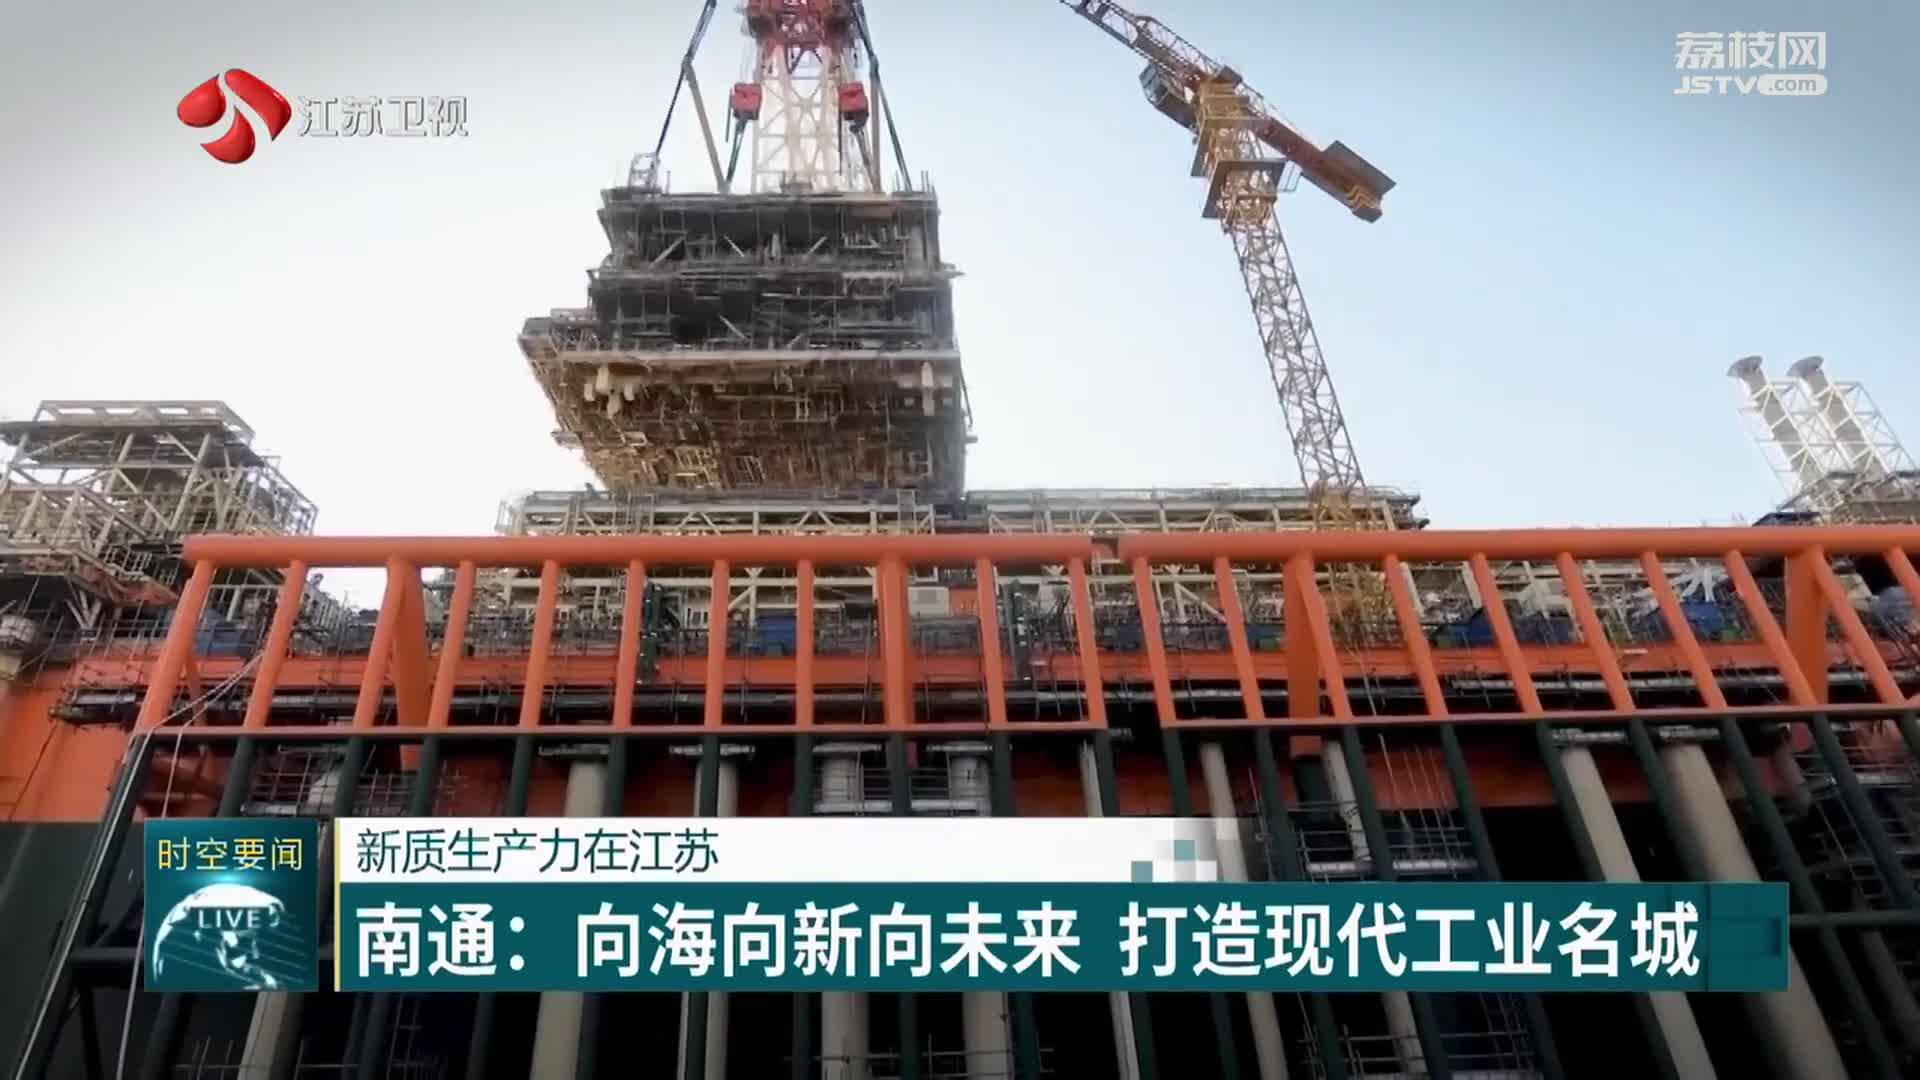 新质生产力在江苏 南通：向海向新向未来 打造现代工业名城